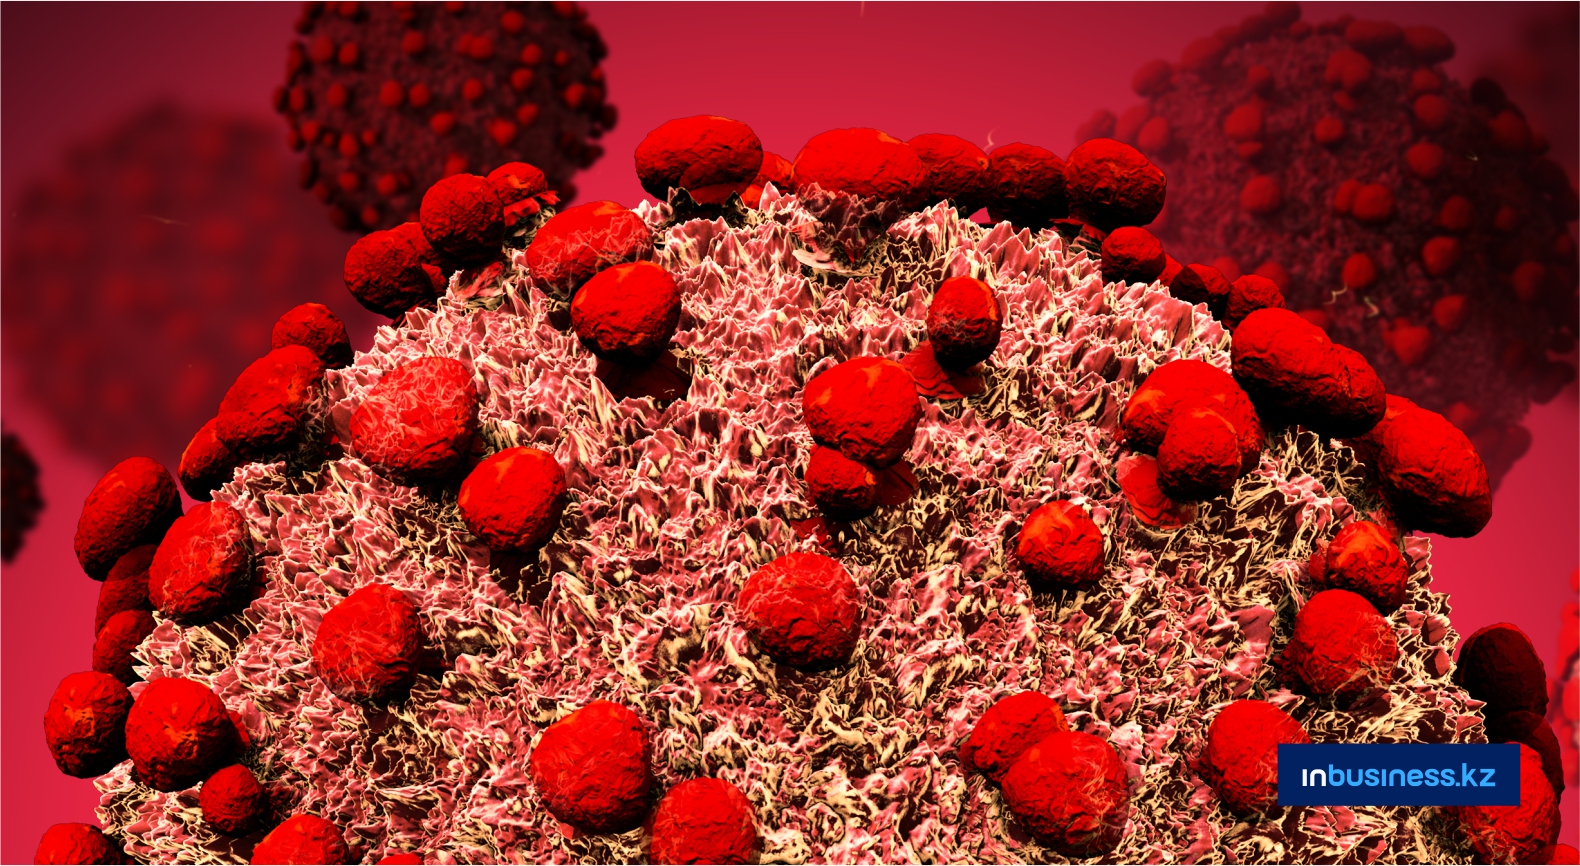 Ученые обнаружили новый штамм коронавируса  